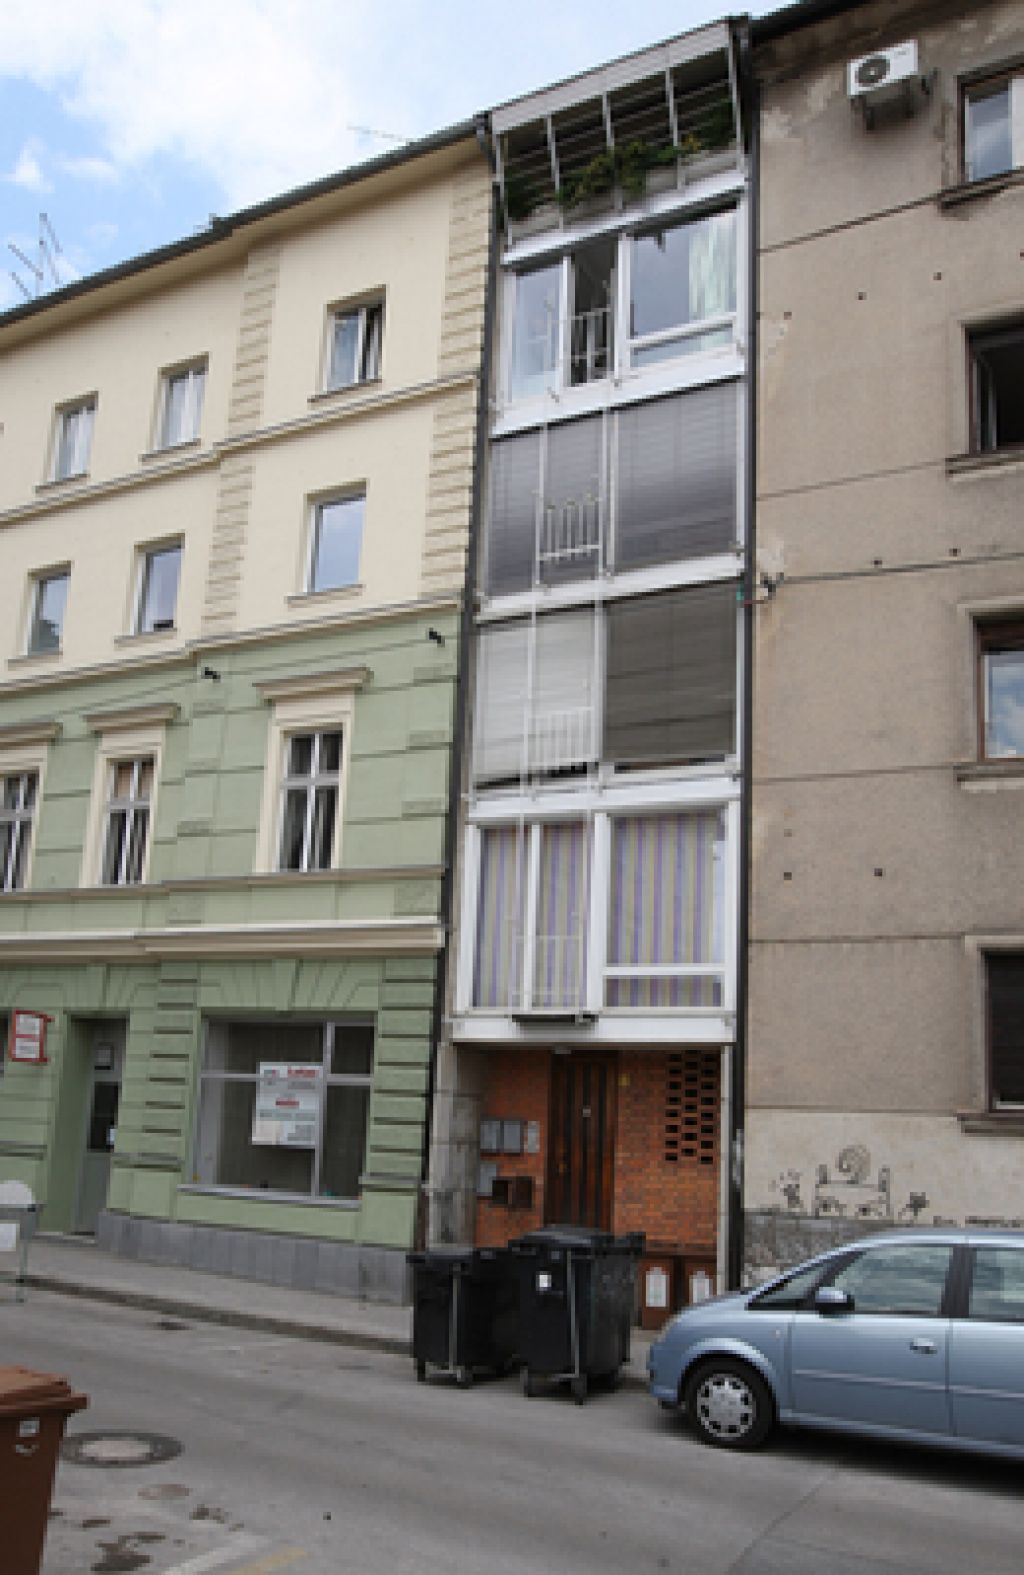 Poizvedovanje novinarke preprečilo prodajo stanovanja za 8000 evrov?